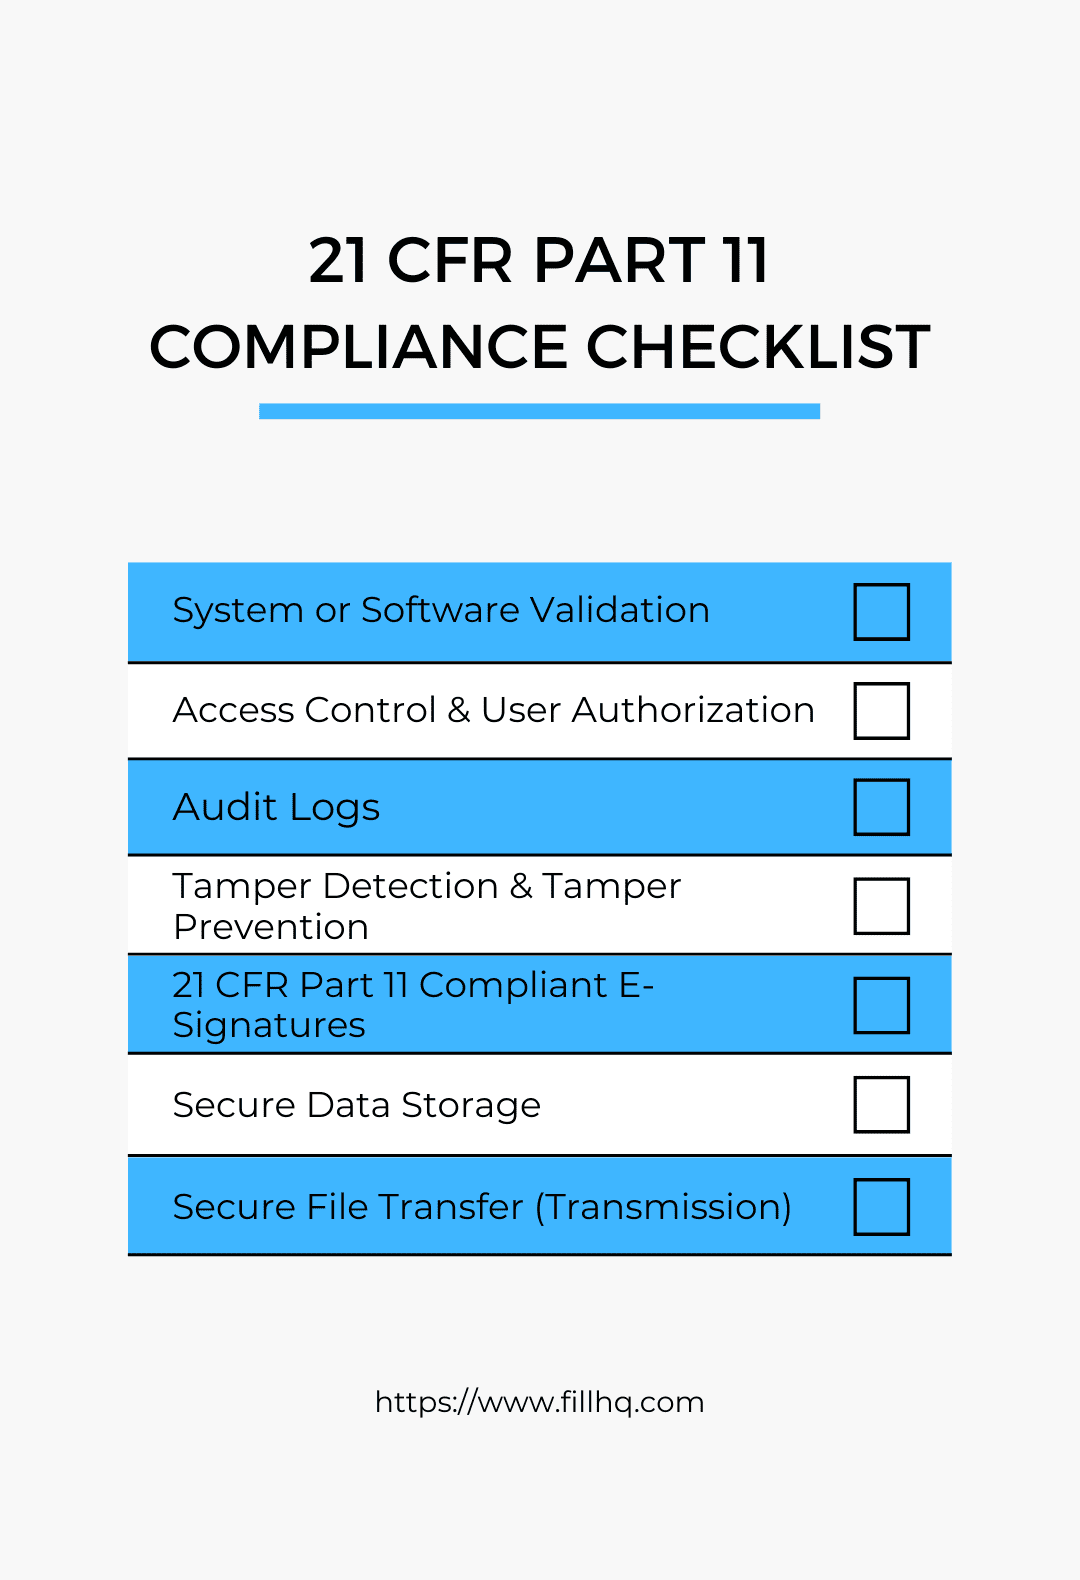 Part 11 compliance checklist